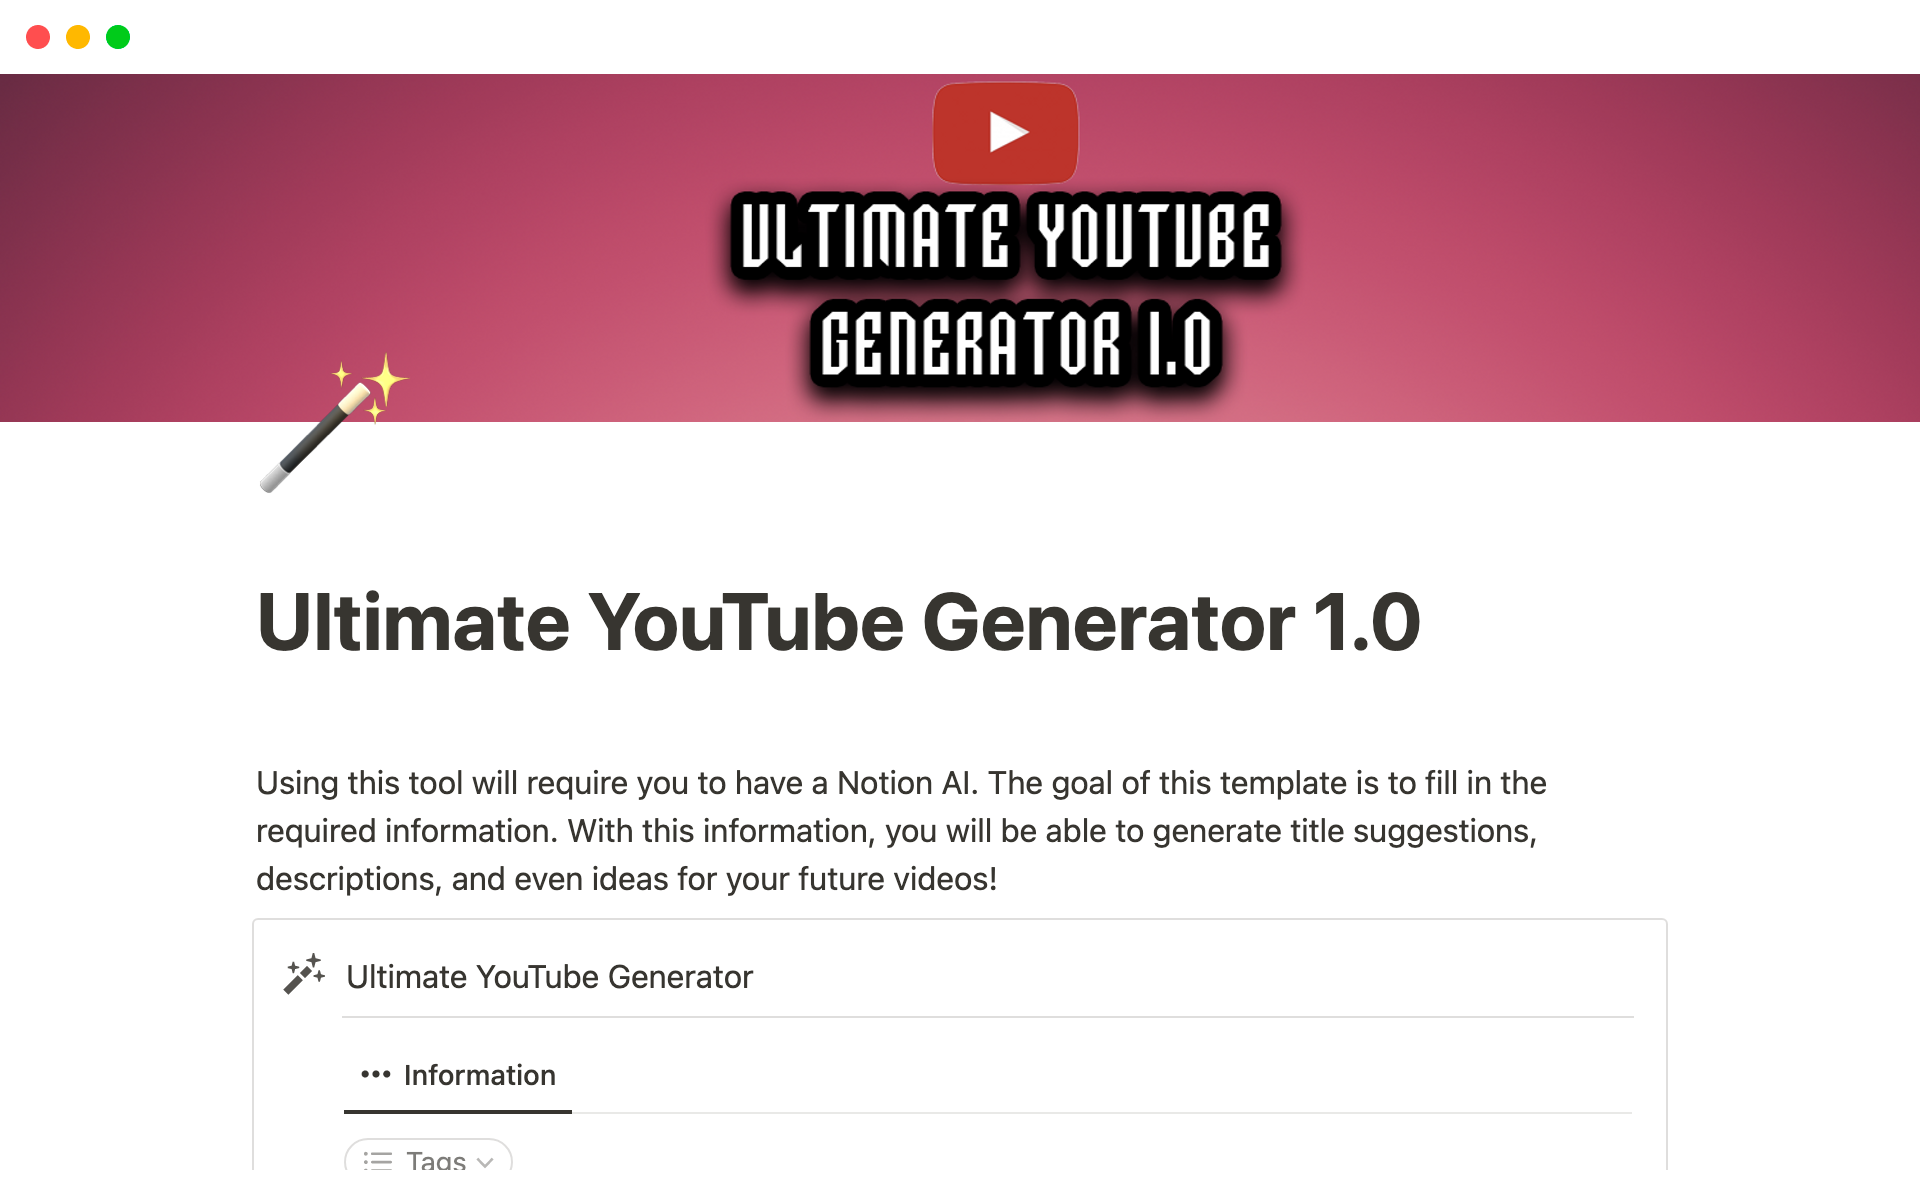 Ultimate YouTube Generator 1.0님의 템플릿 미리보기